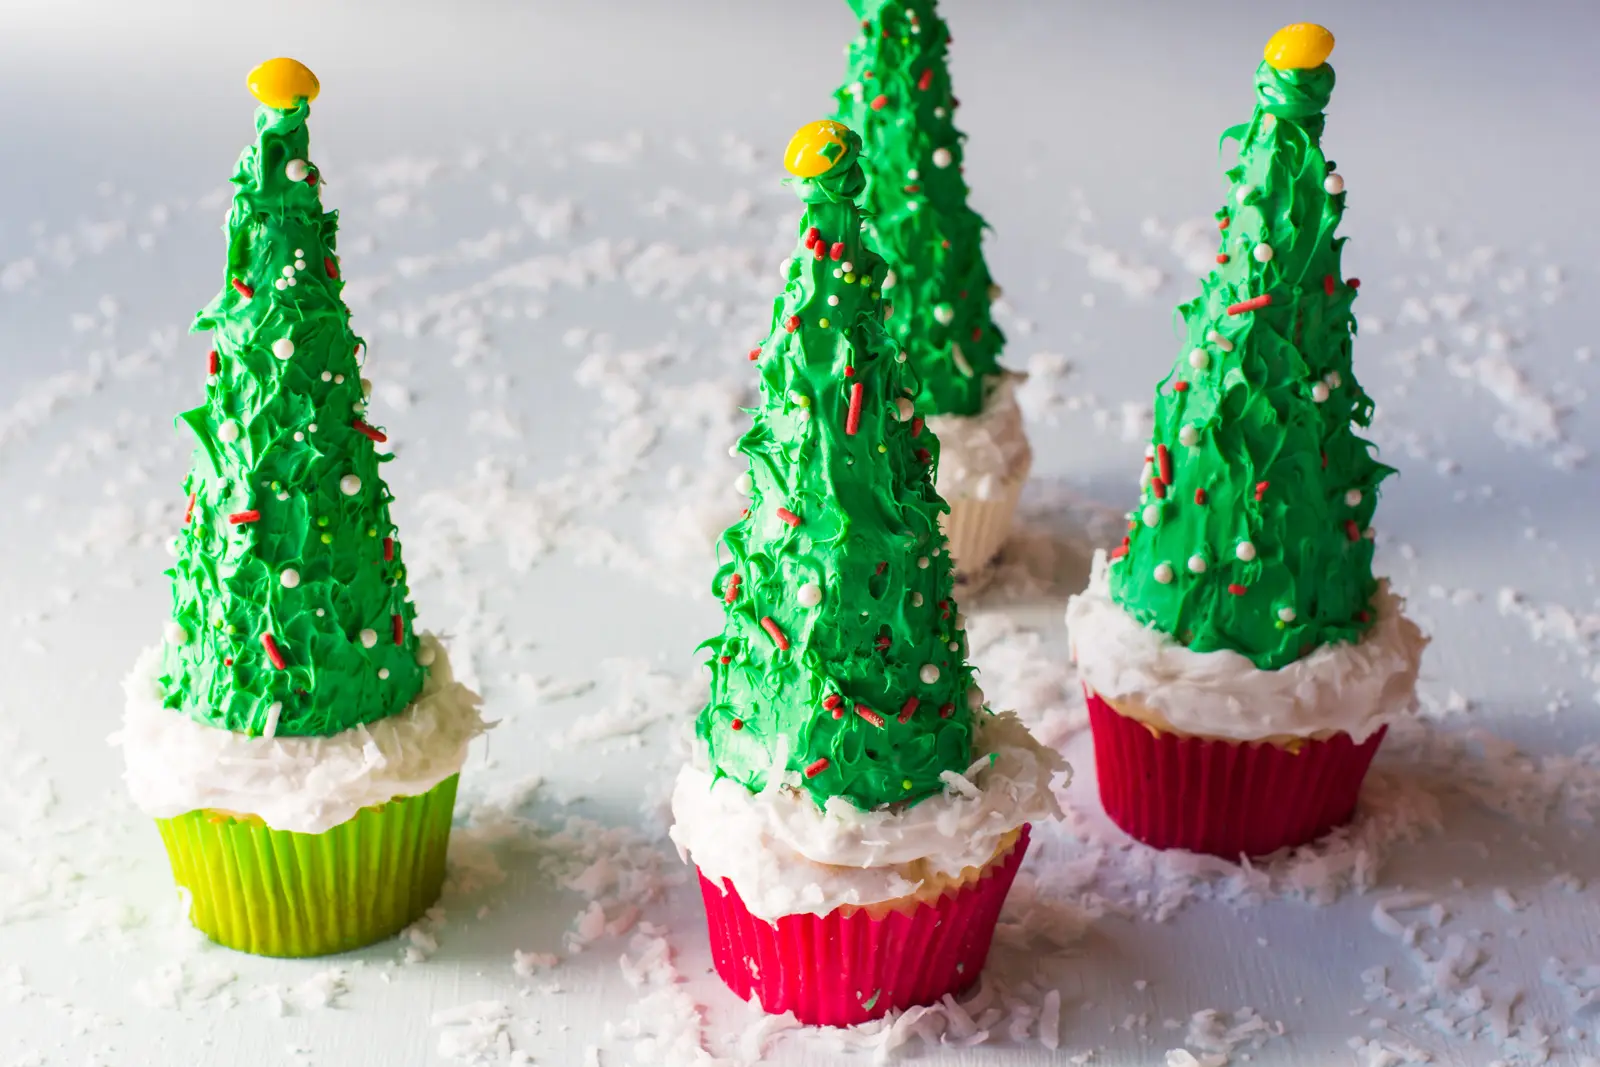 Festive and fun Vegan Christmas Tree Cupcakes